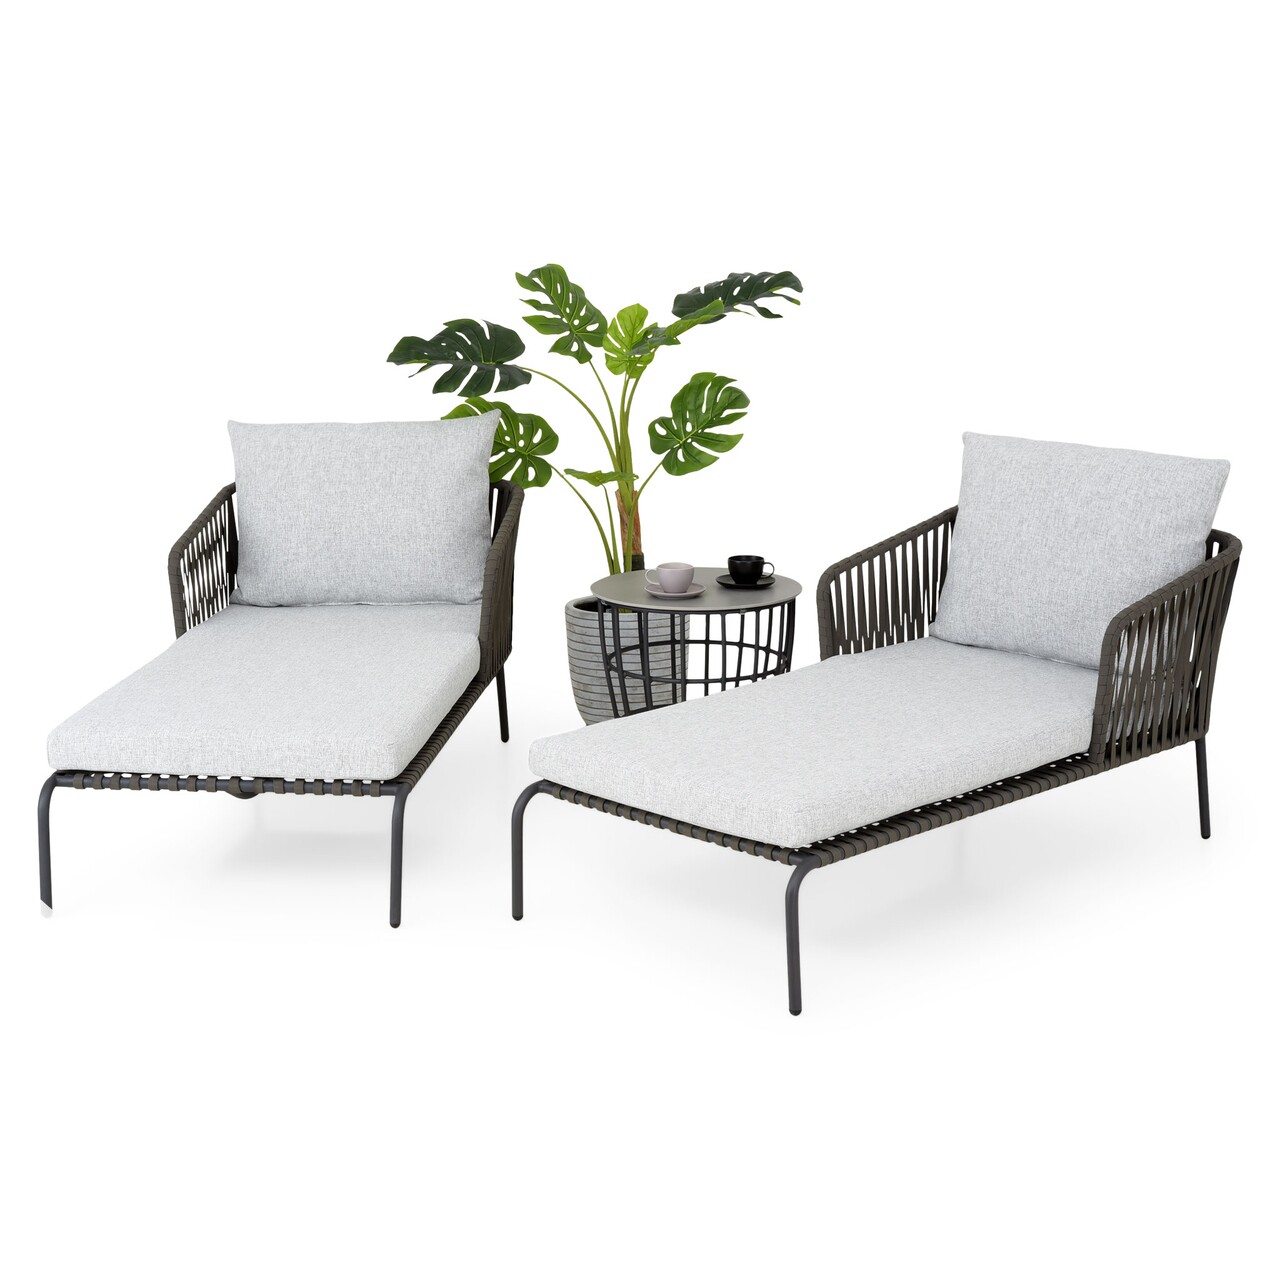 Maison milano kerti terasz/bútor szett, 2 db napozóágy és asztalka, alumínium, szürke/fehér